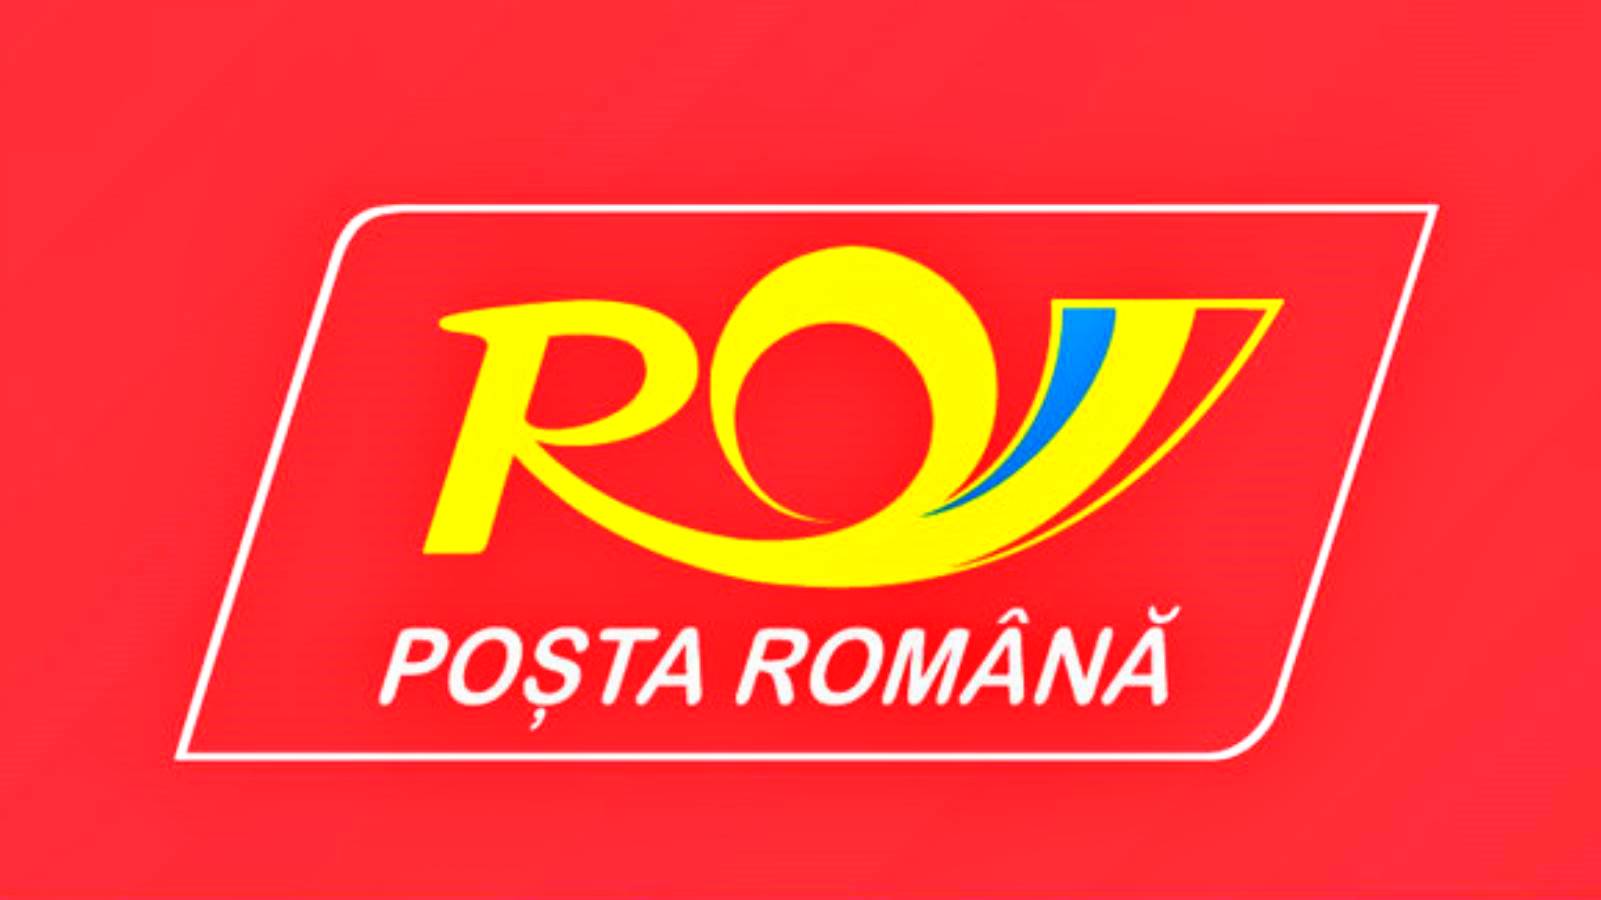 La modernisation de la poste roumaine se poursuit, annonce faite